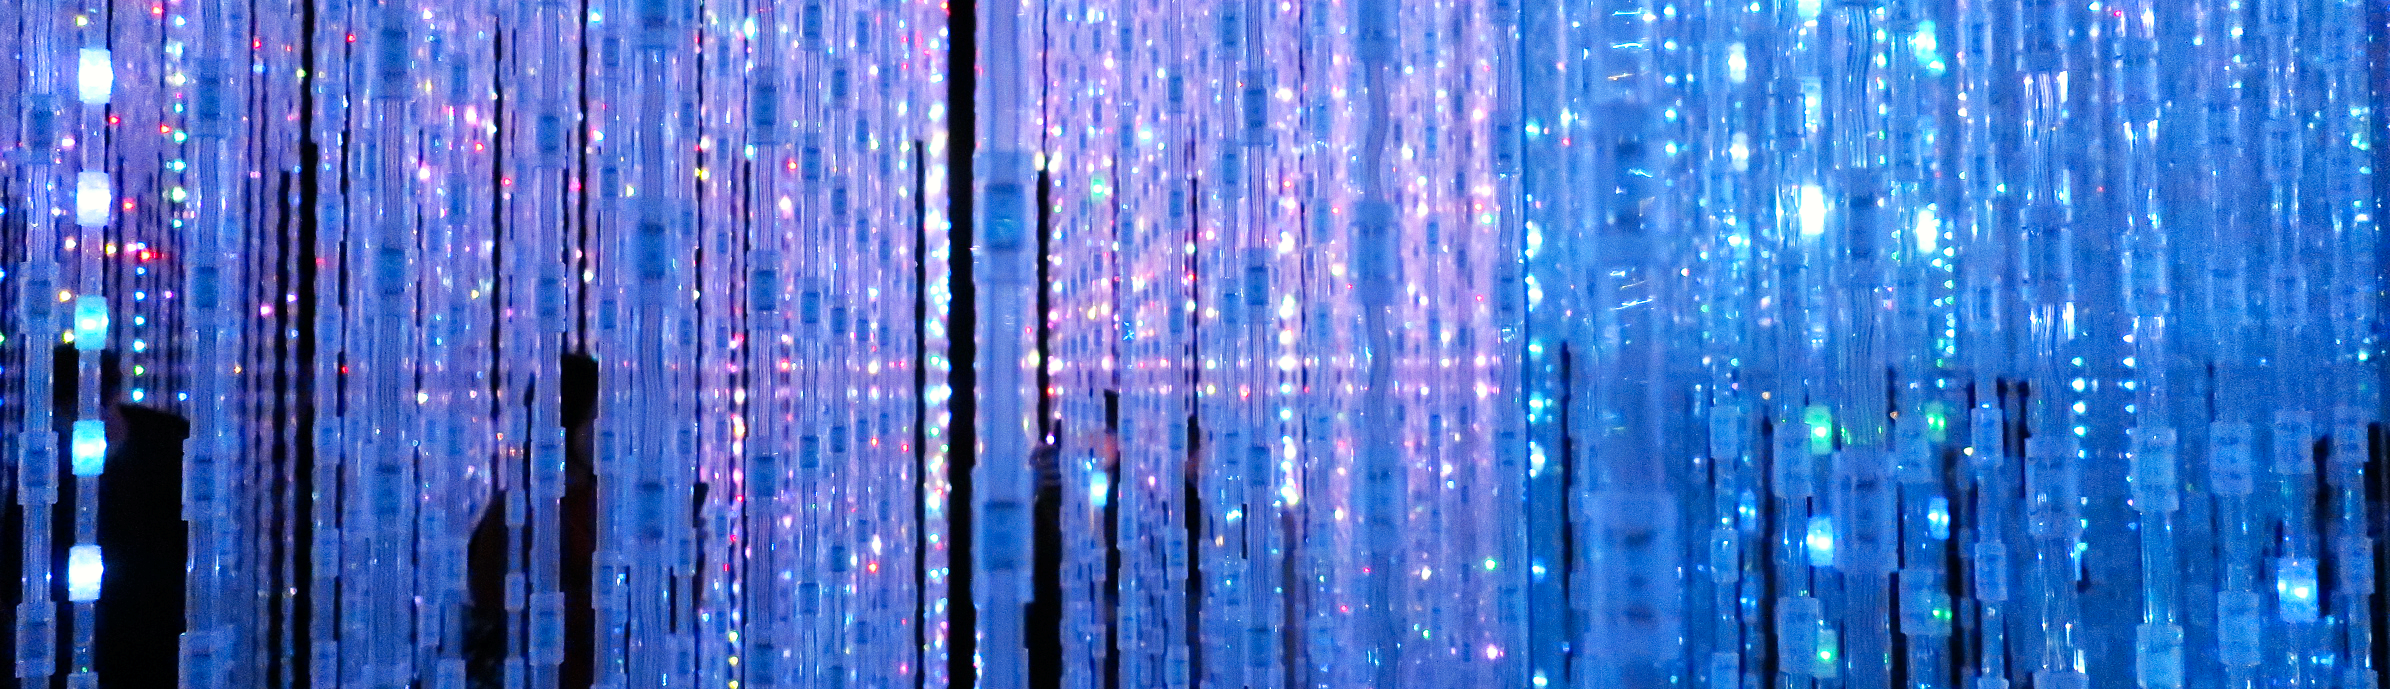 strands of led lights